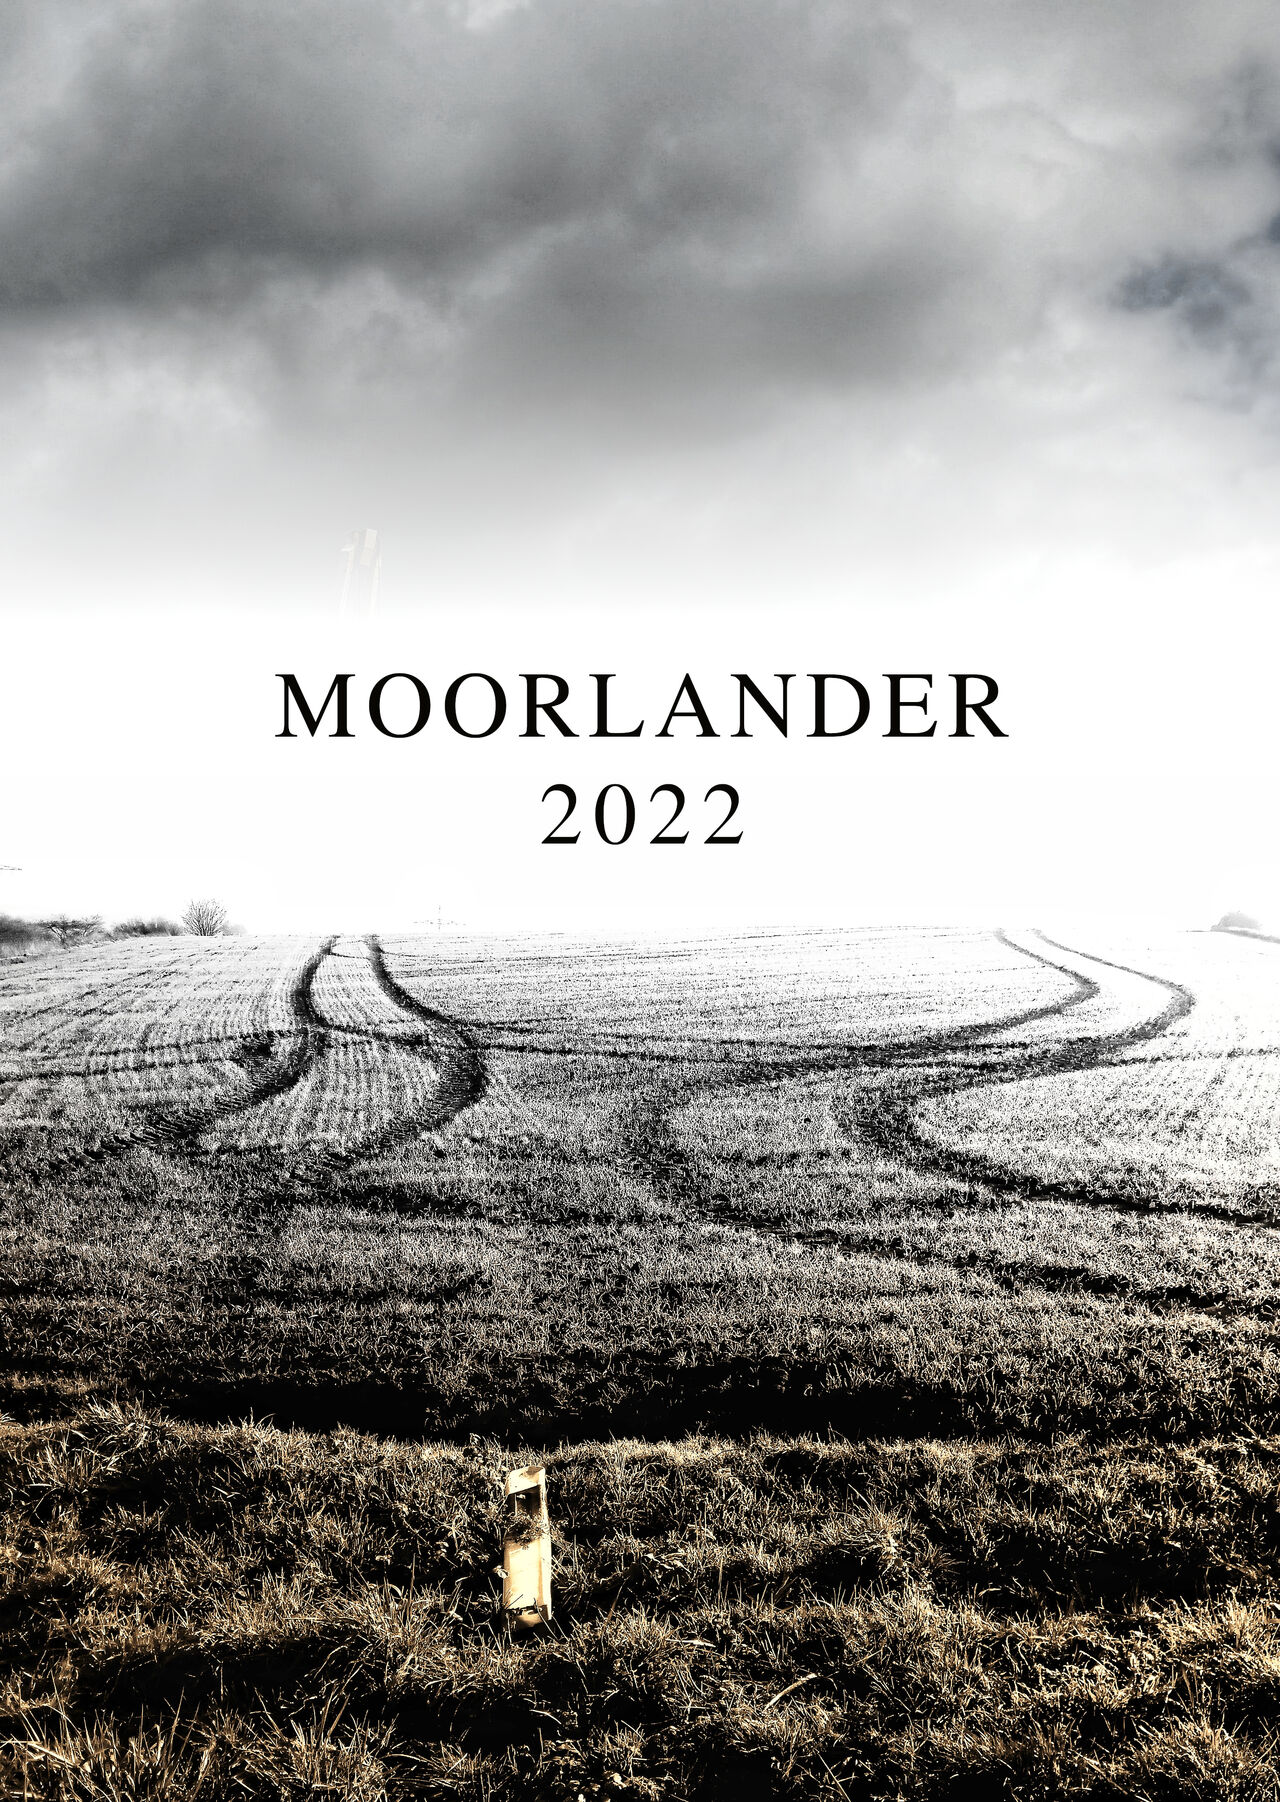 Kalenderdeckblatt mit der Aufschrift Moorlander 2022 zwischen düsterem Himmel und einer Ackerszene zweier sich zunächst annähernder, dann parallel verlaufender Traktorspuren im Stoppelacker.